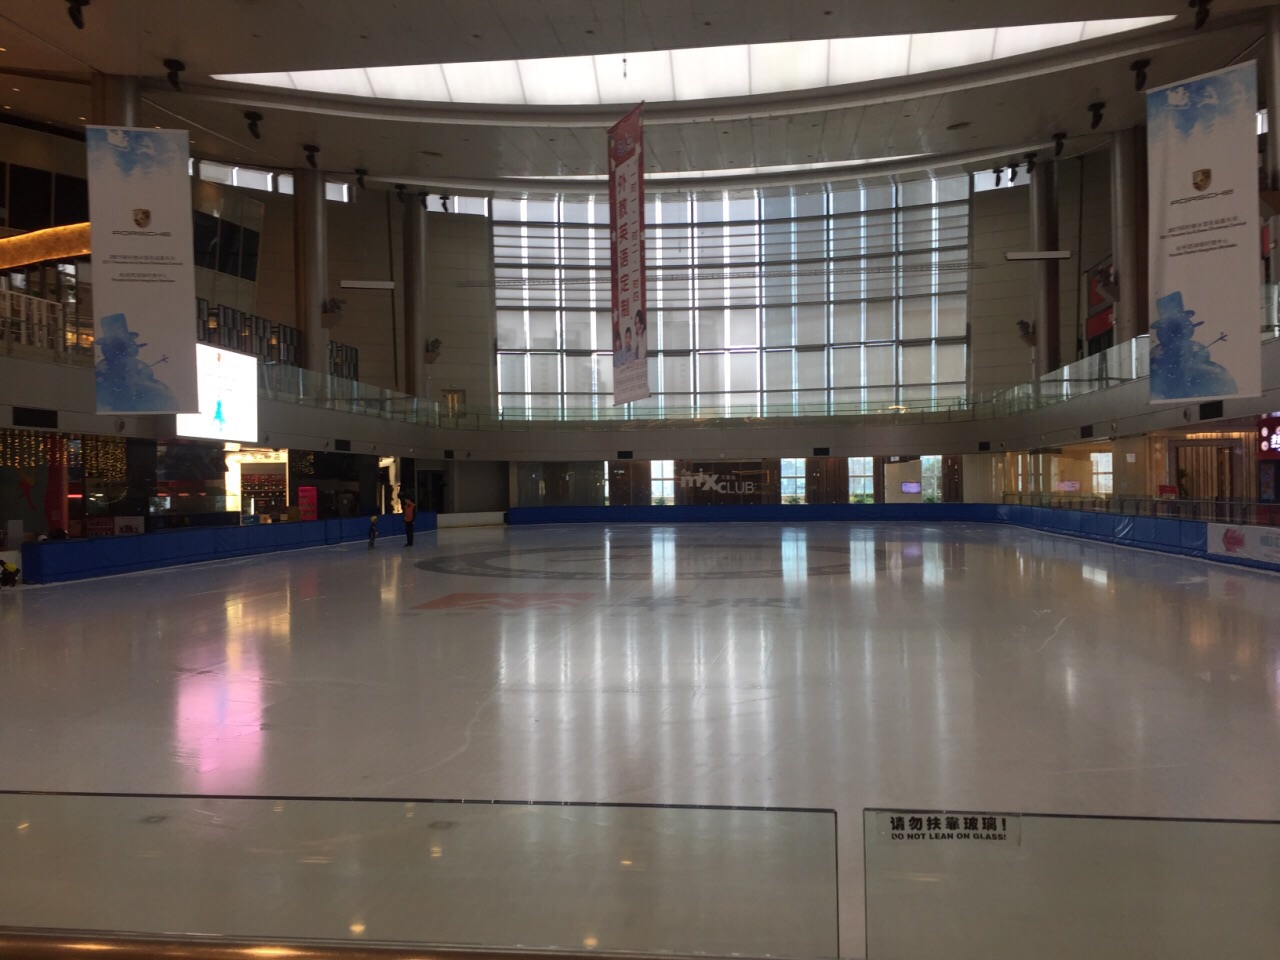 杭州冰纷万象滑冰场图片